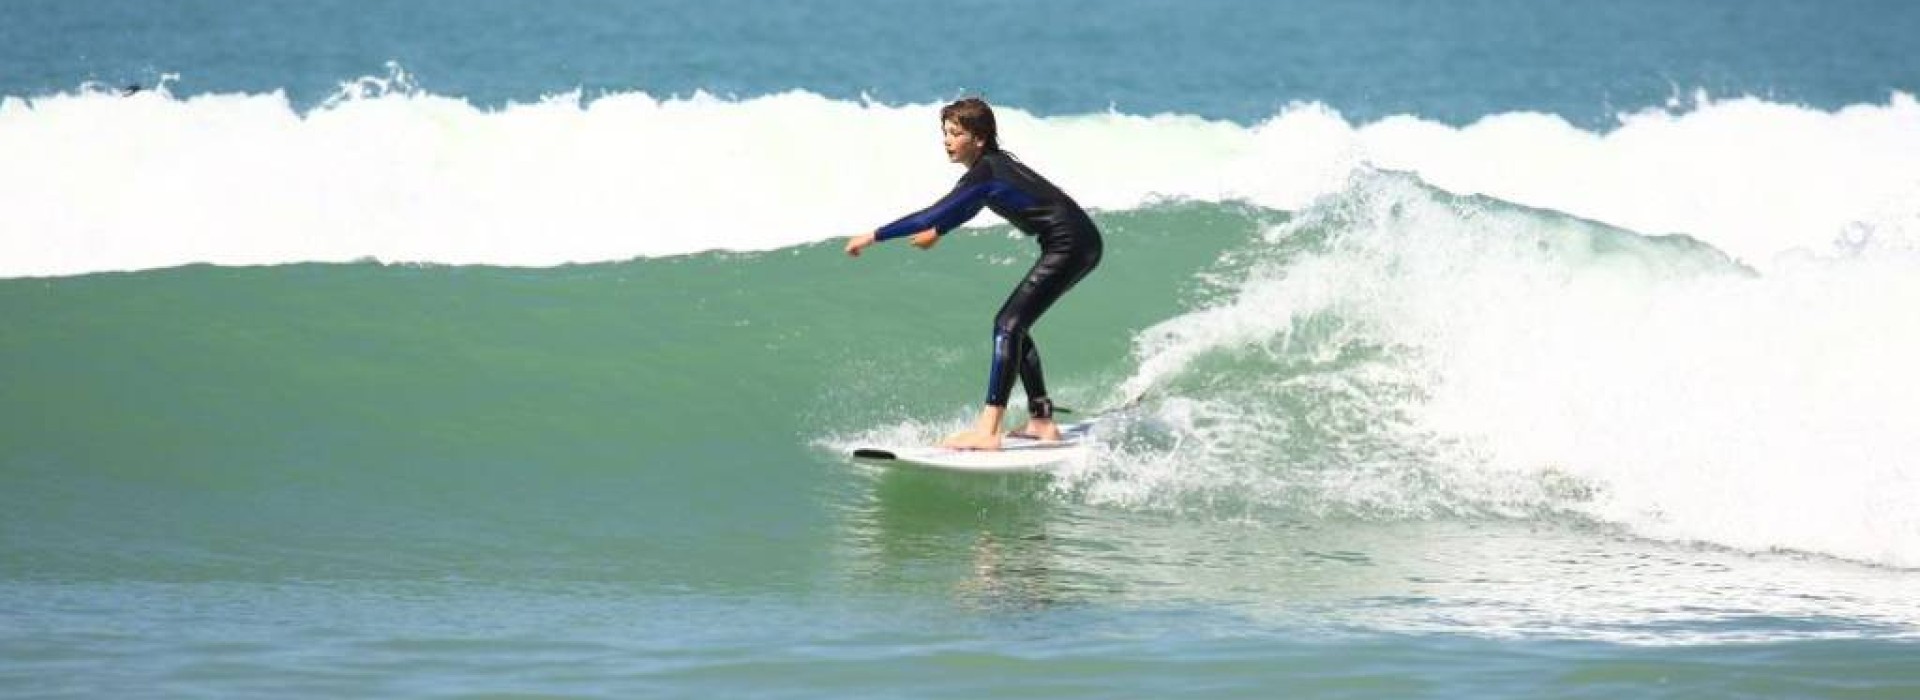 COURS DECOUVERTE DU SURF EN FAMILLE